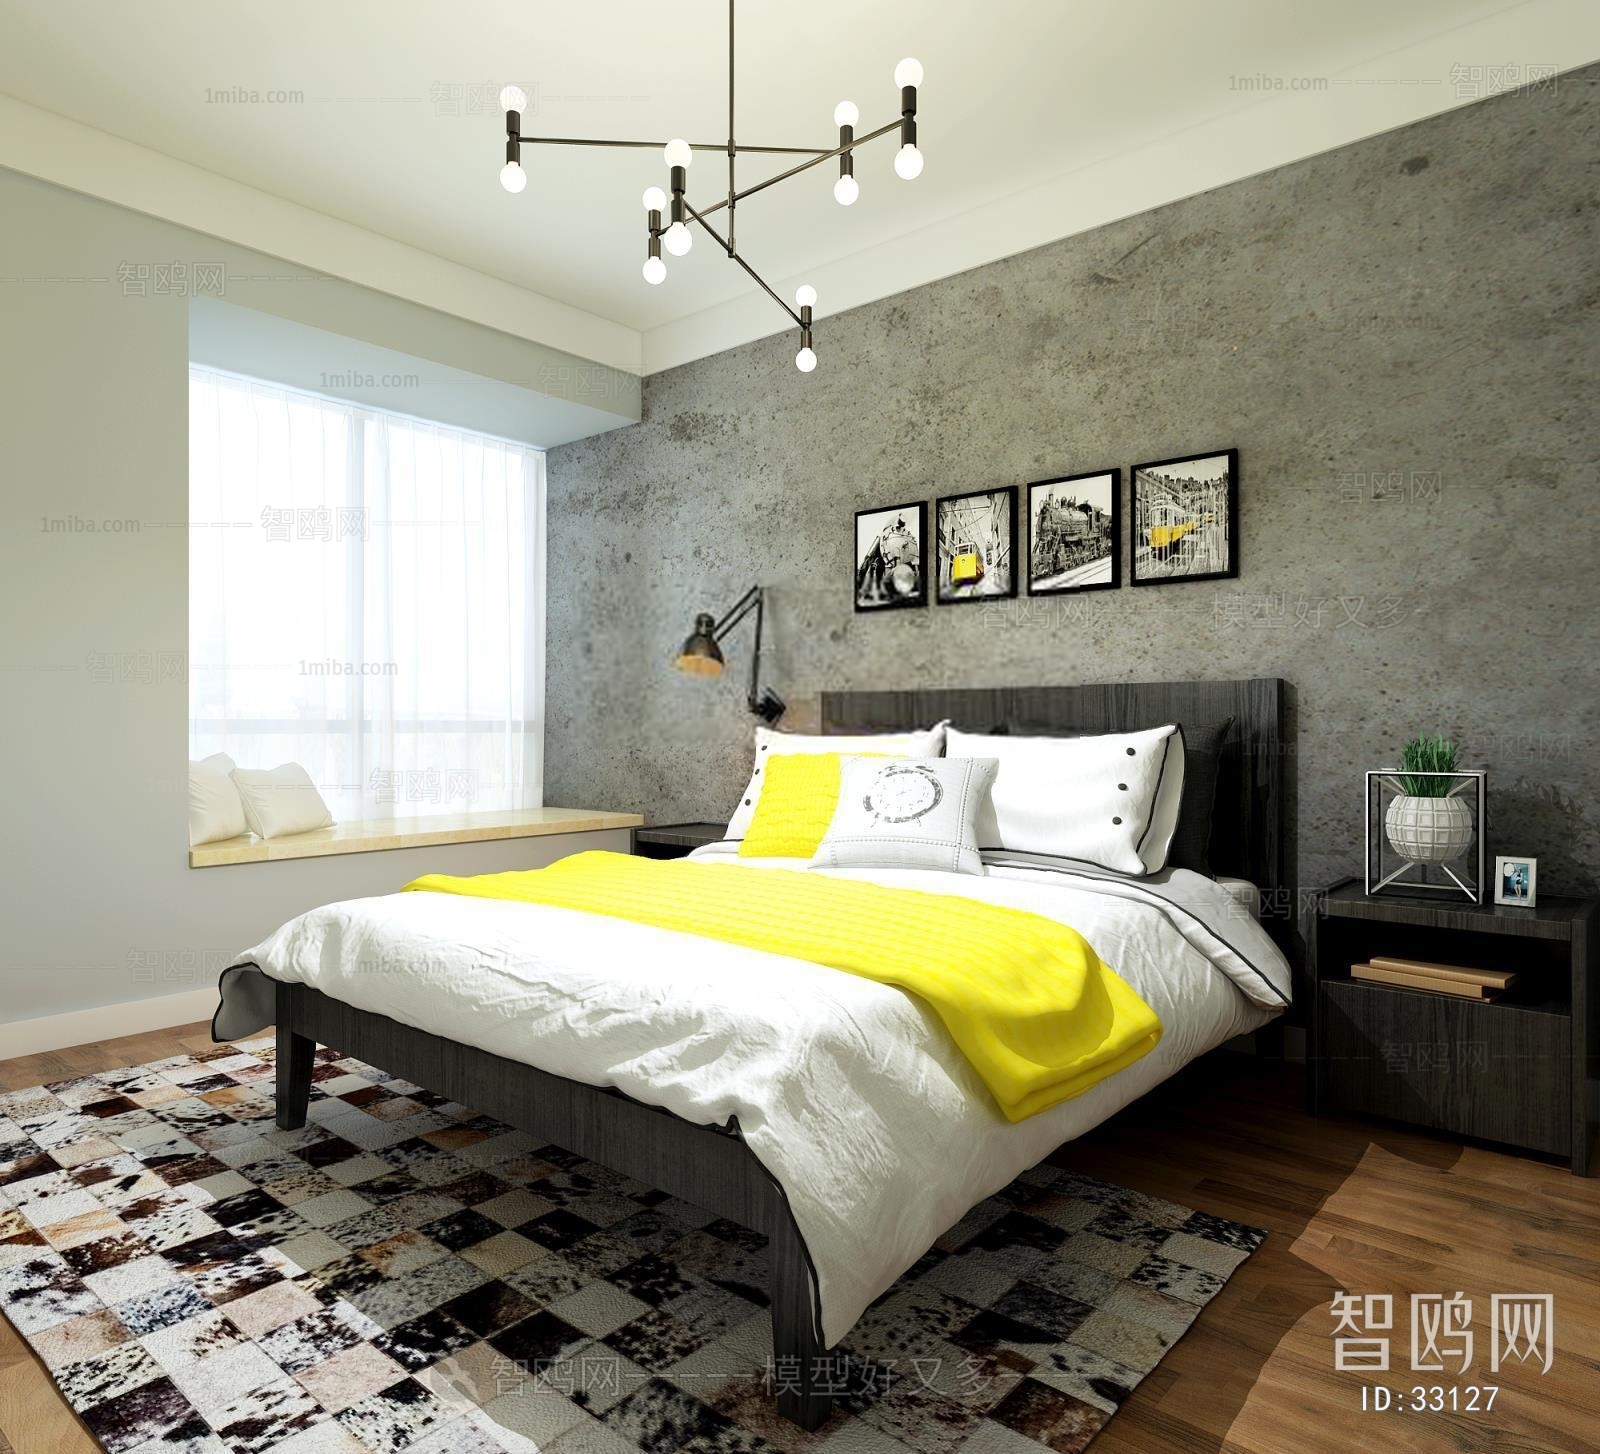 Modern Industrial Style Bedroom